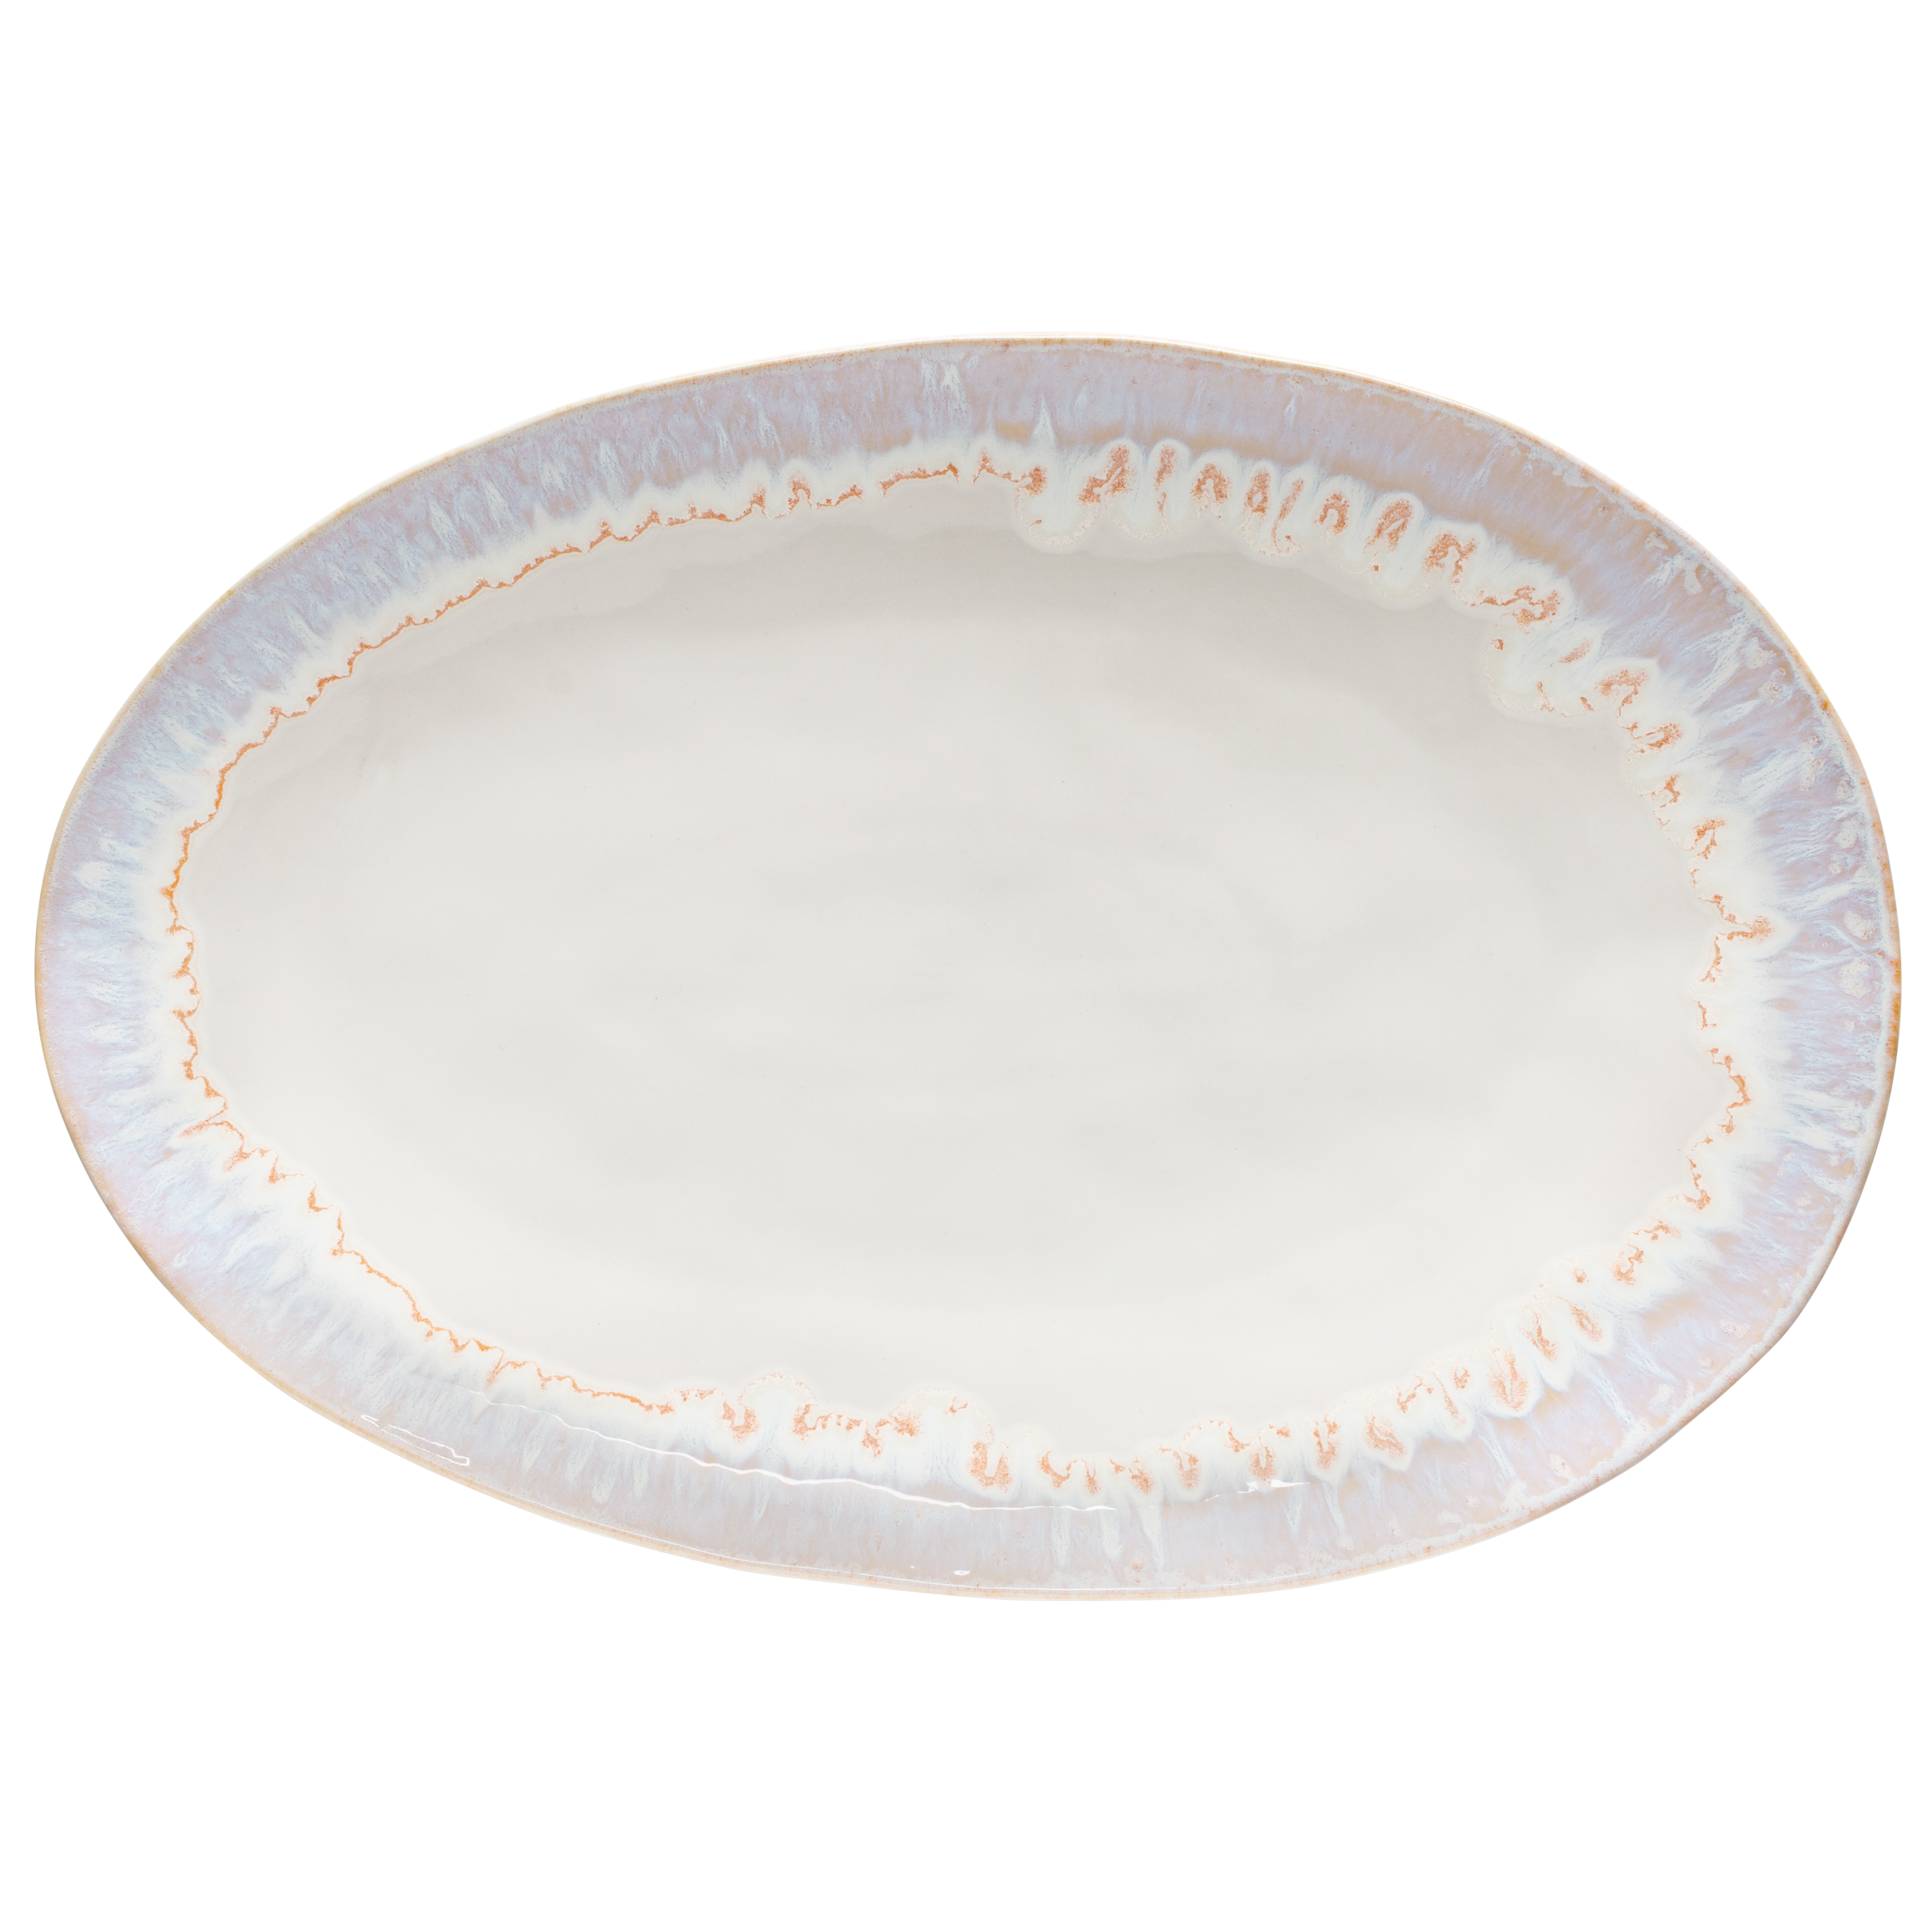 Brisa Salt Oval Platter Large 41cm Gift